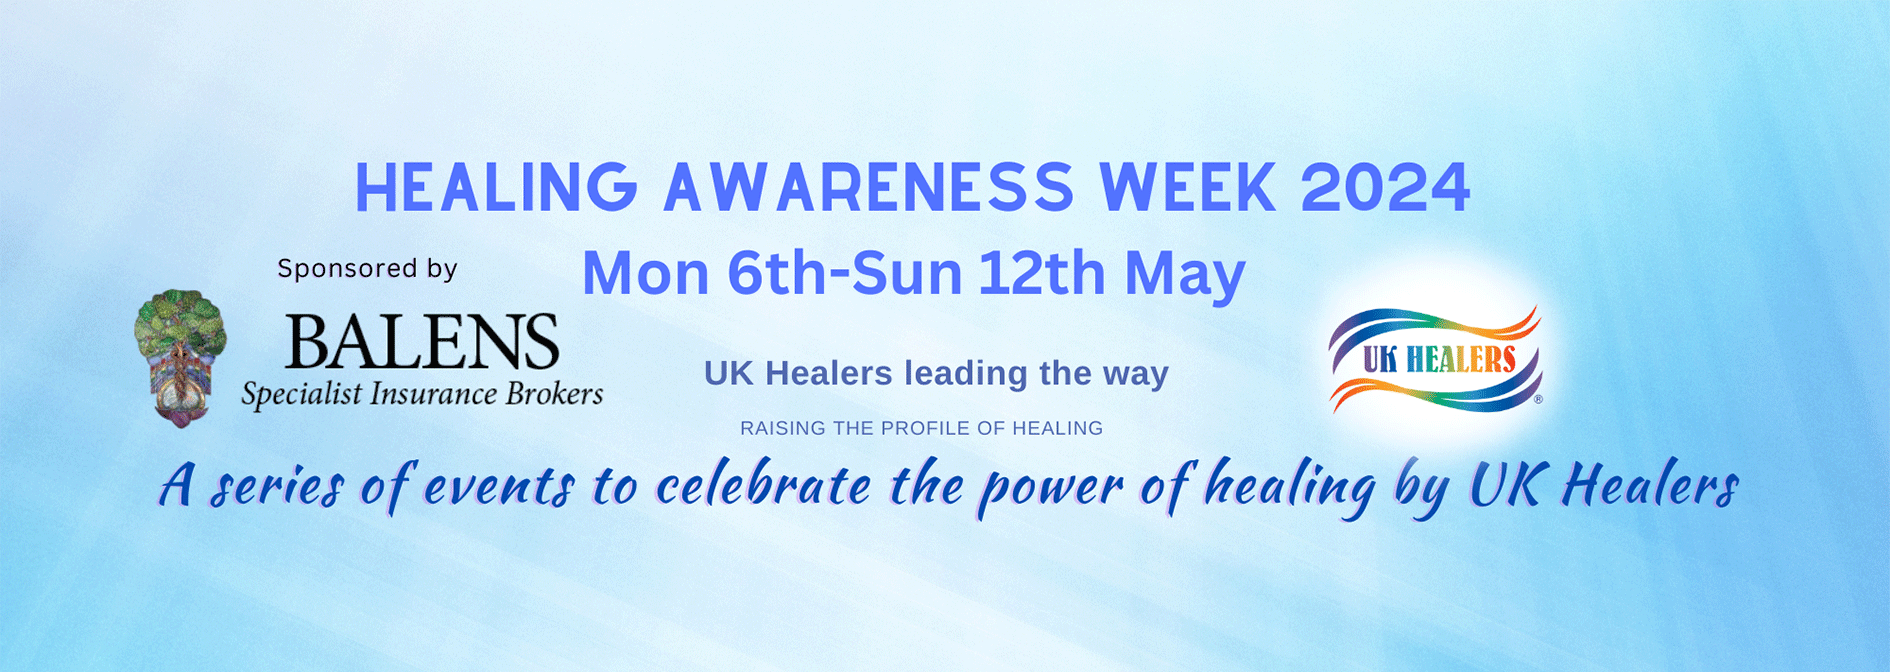 healing awareness week 2024 banner